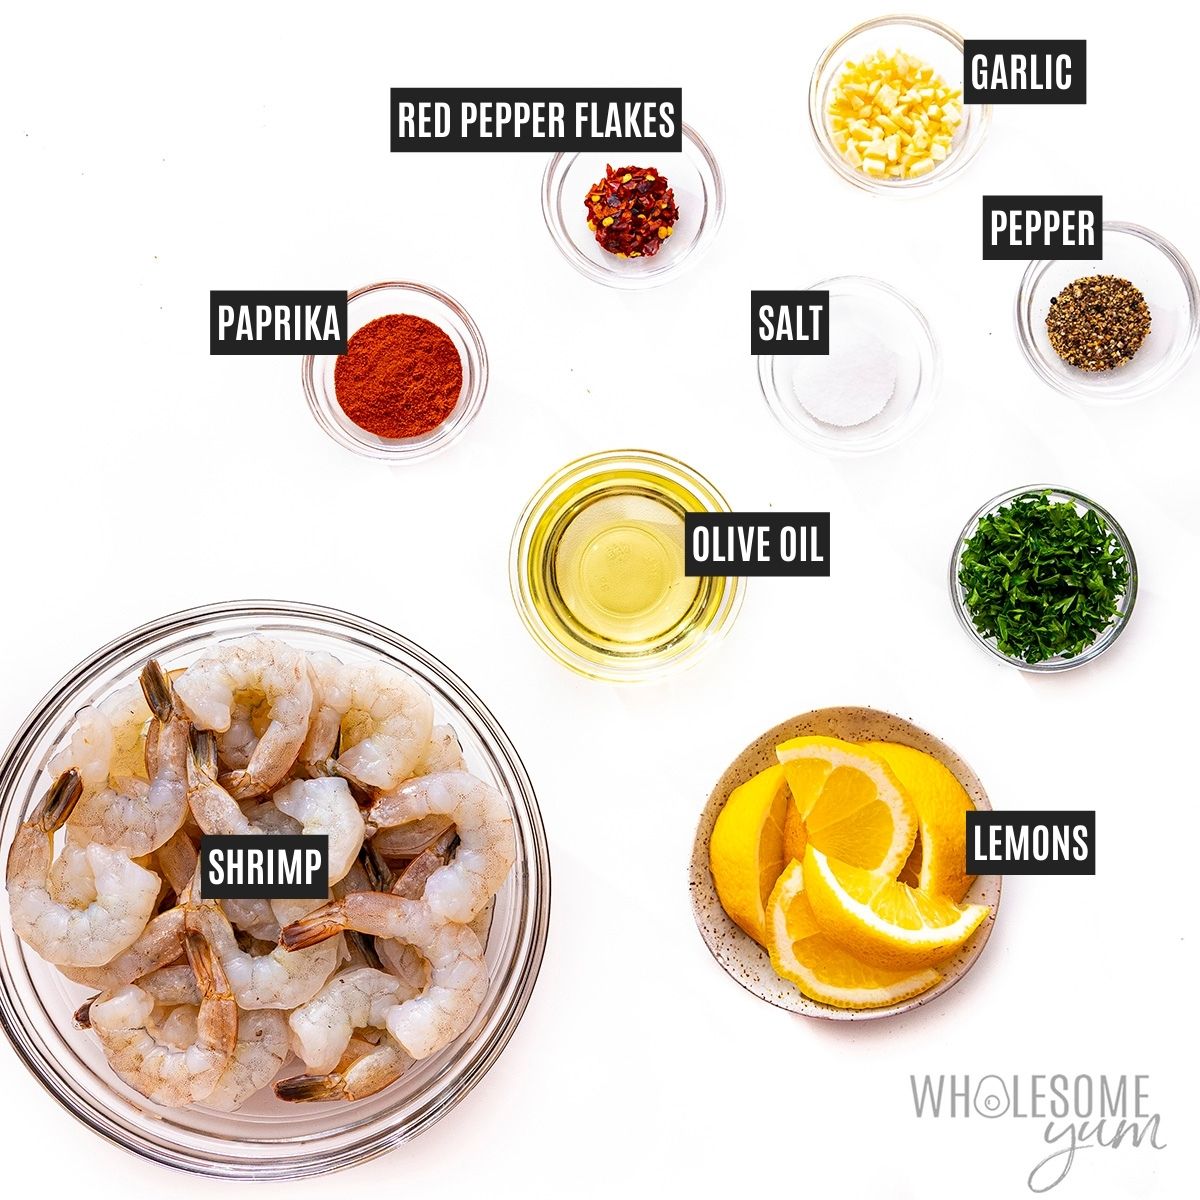 Sauteed shrimp recipe ingredients.